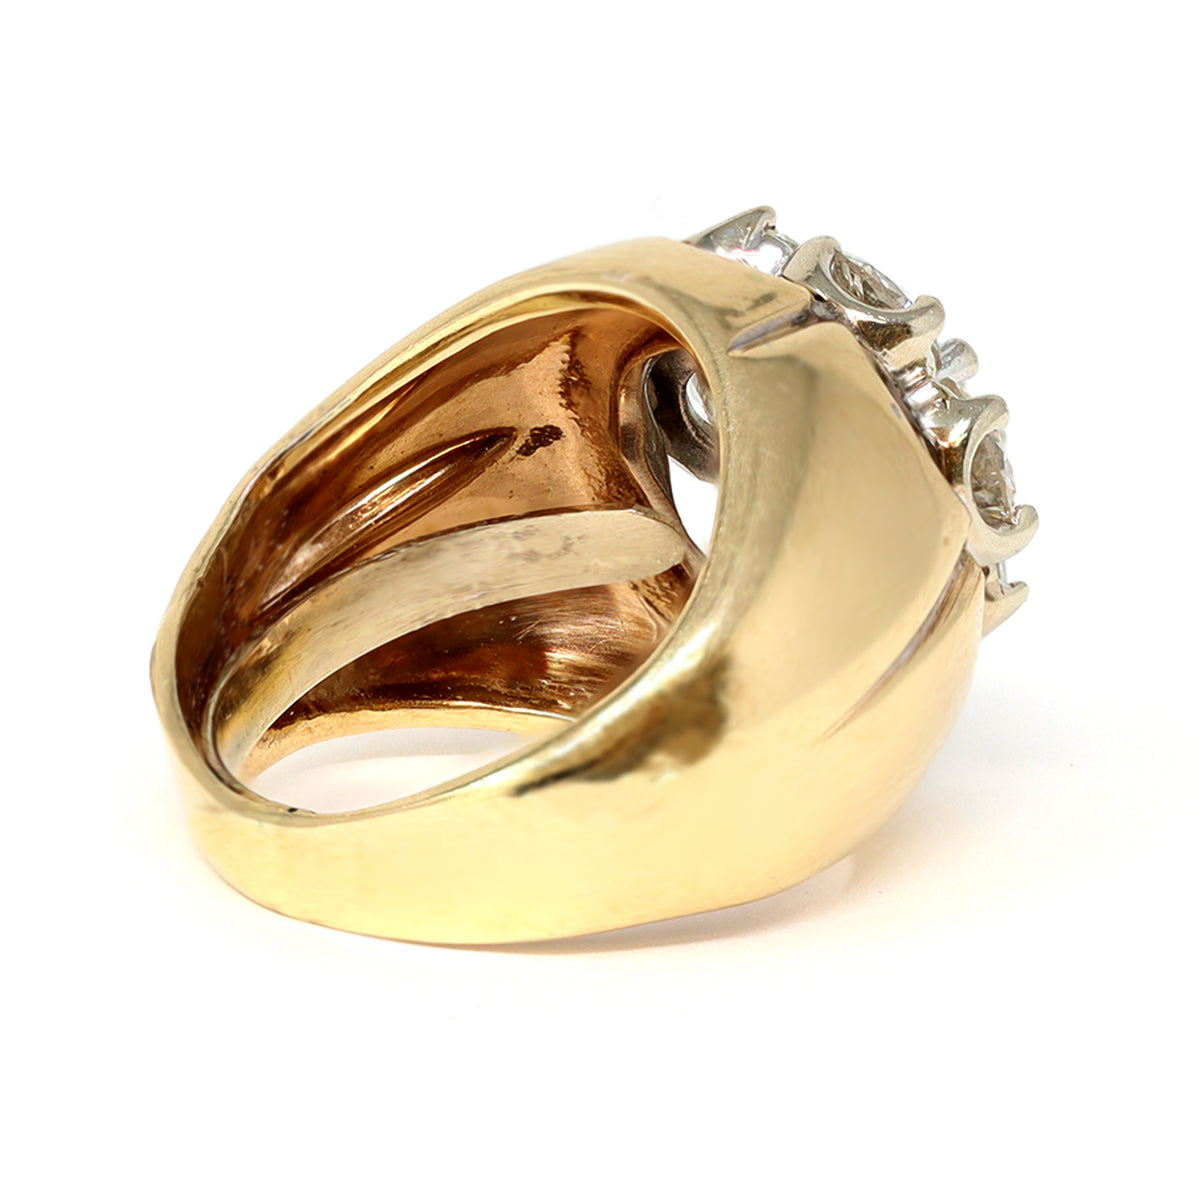 Rosette diamond cocktail ring set in 14 karat yellow gold gard view